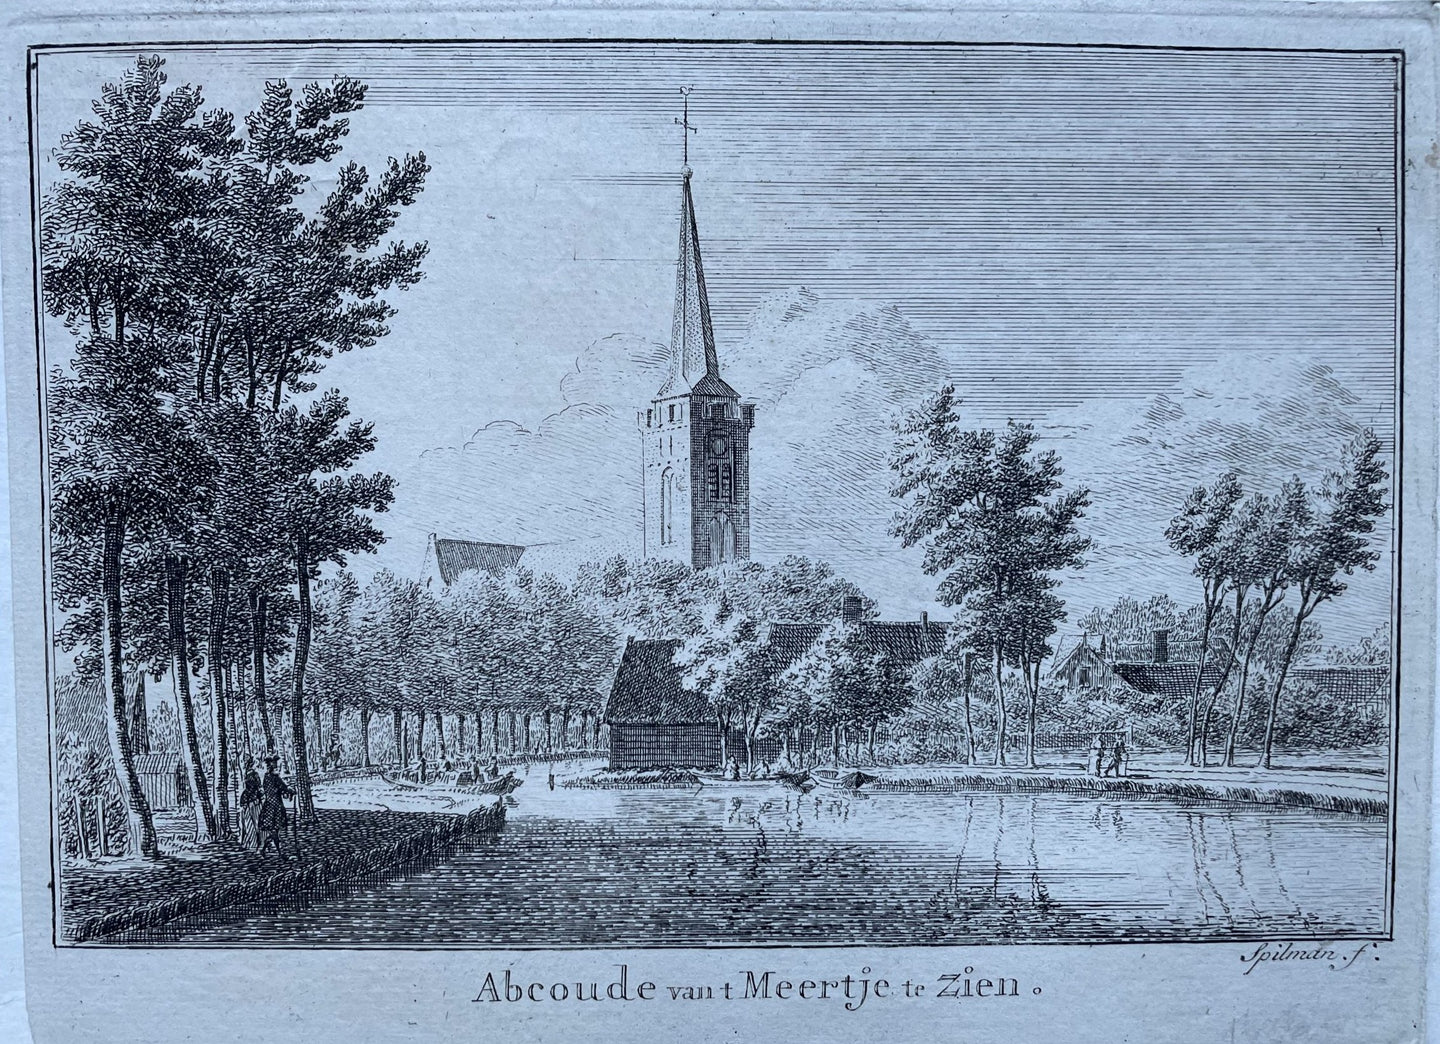 Abcoude 'Abcoude van 't Meertje te zien' - H Spilman - circa 1760